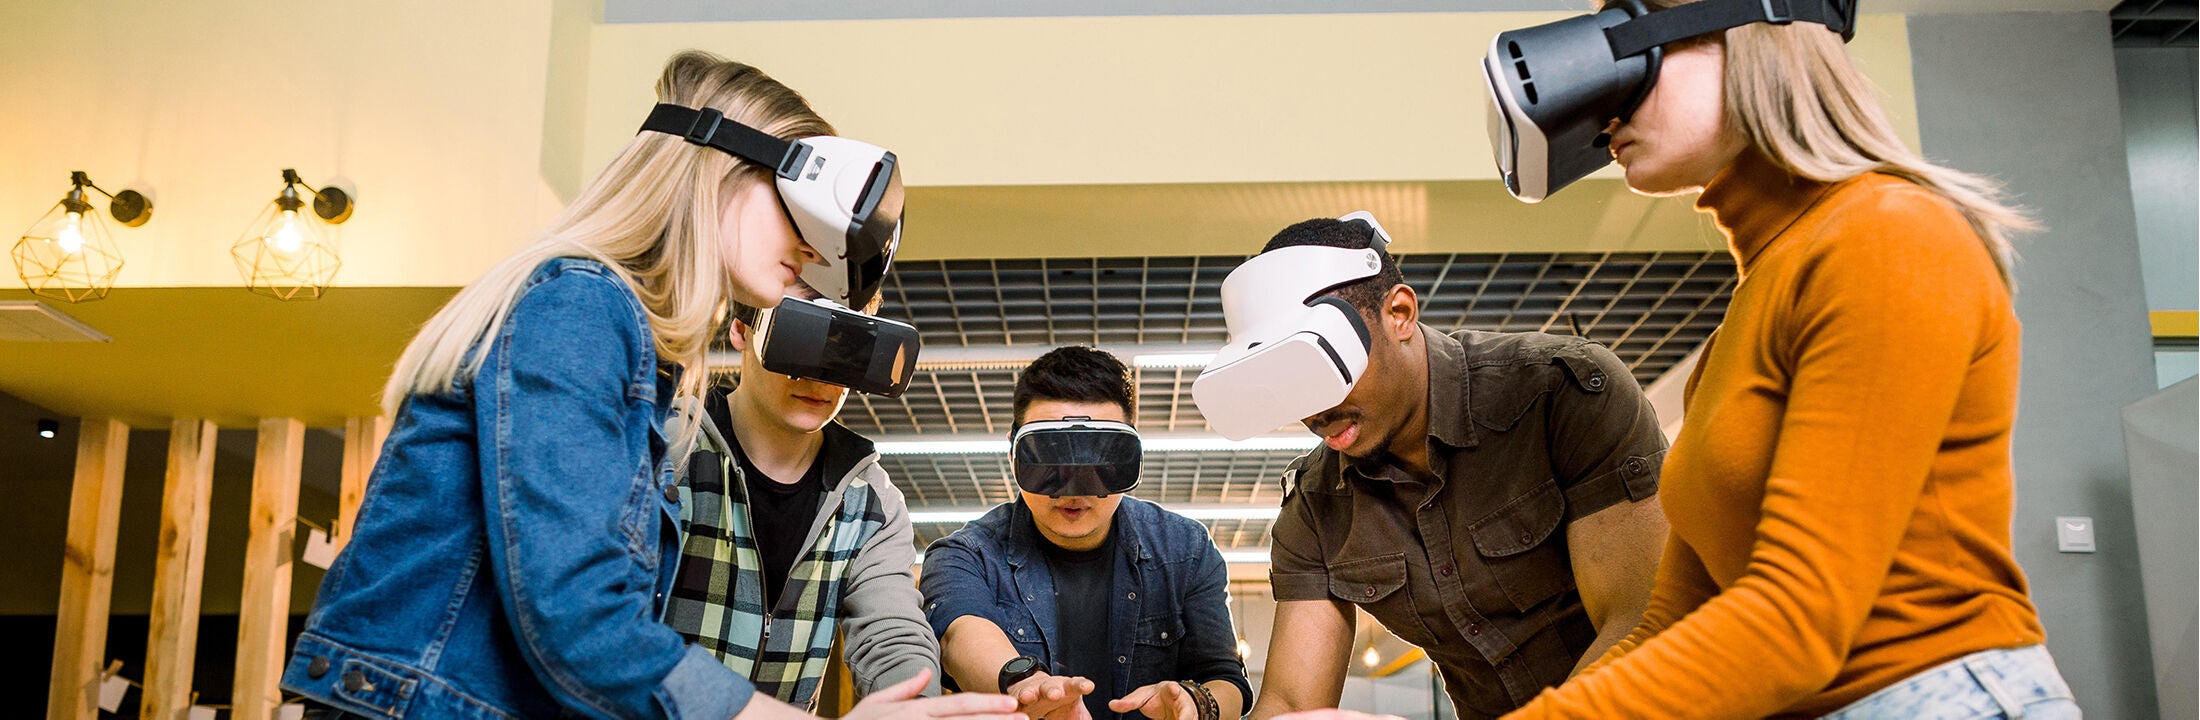 Beeld studenten met VR brillen